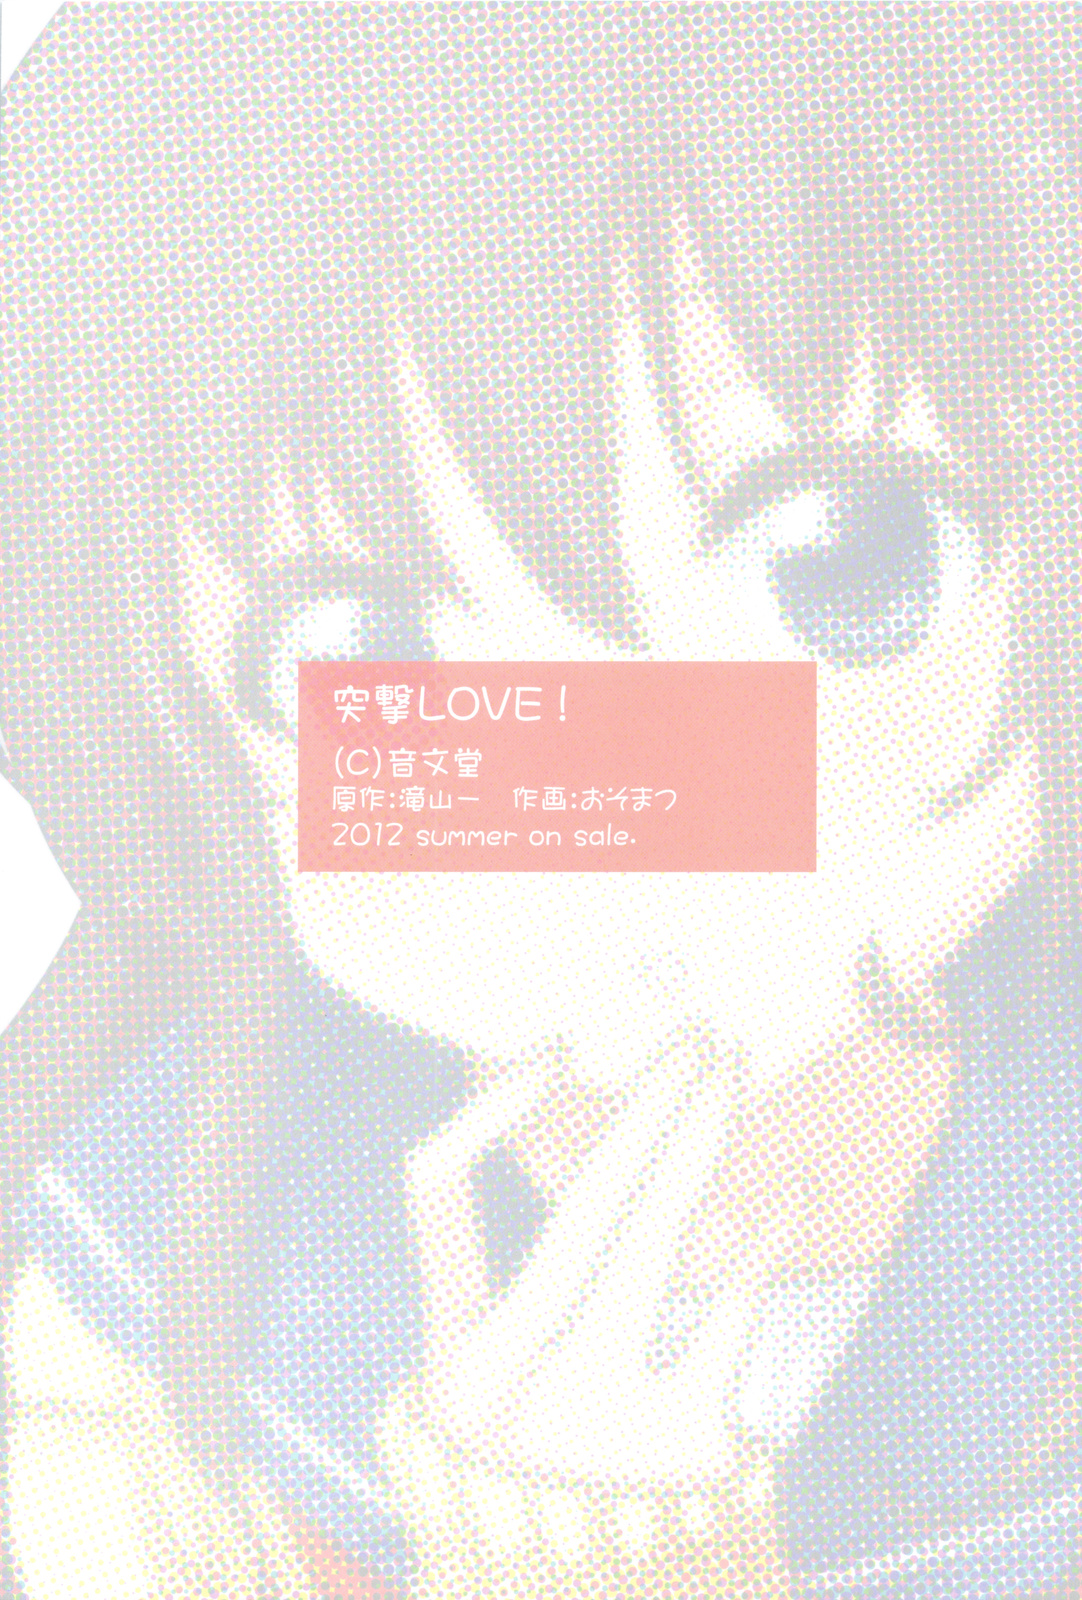 (こみトレ20) [音文堂 (おそまつ)] 突撃LOVE!